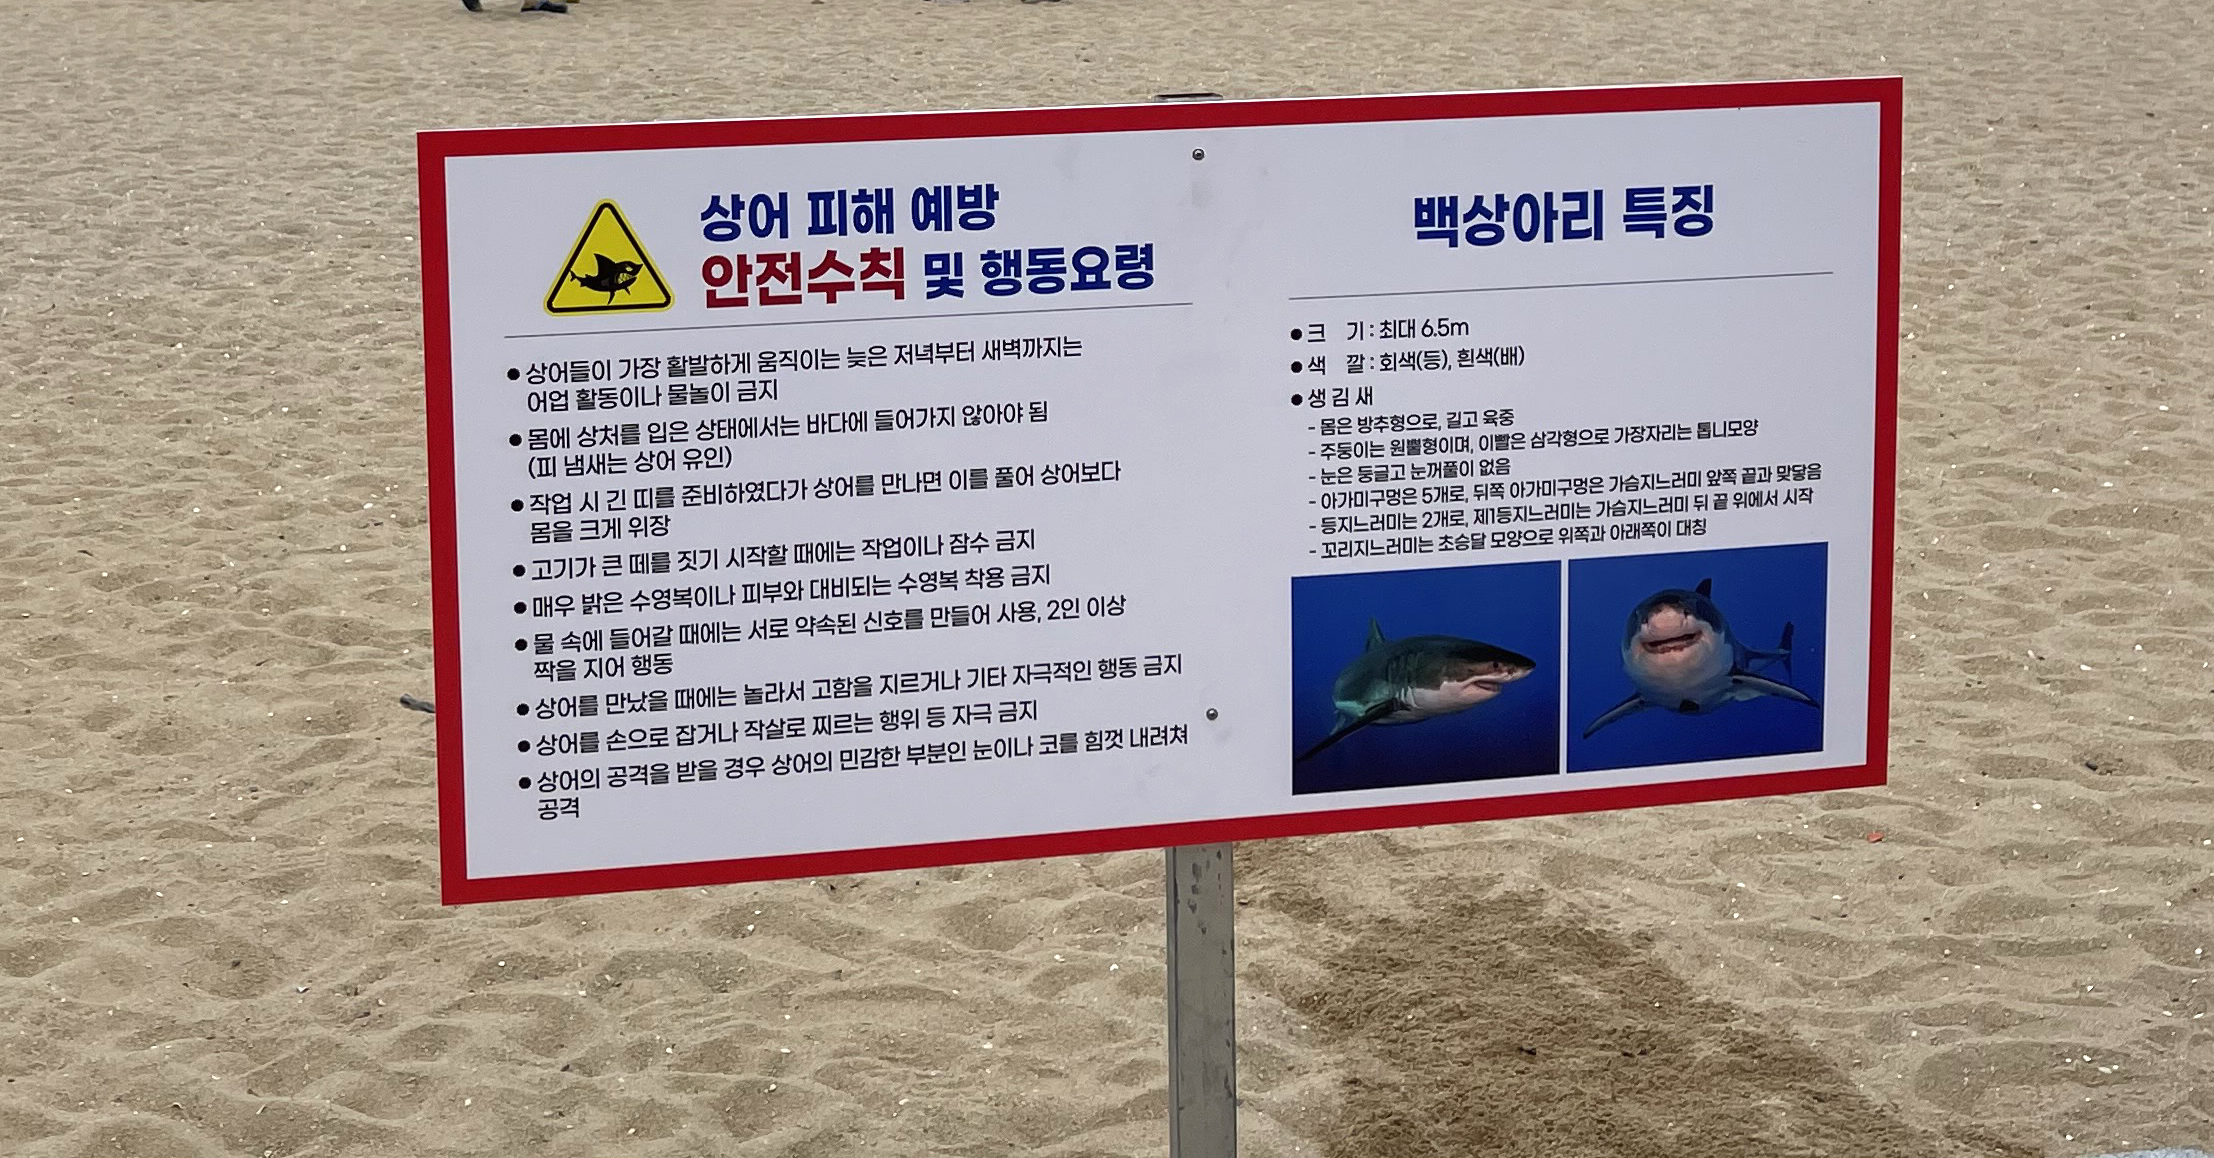 속초해수욕장에서 설치된 상어 피해 예방 안전 수칙 (촬영기자 : 박영웅)